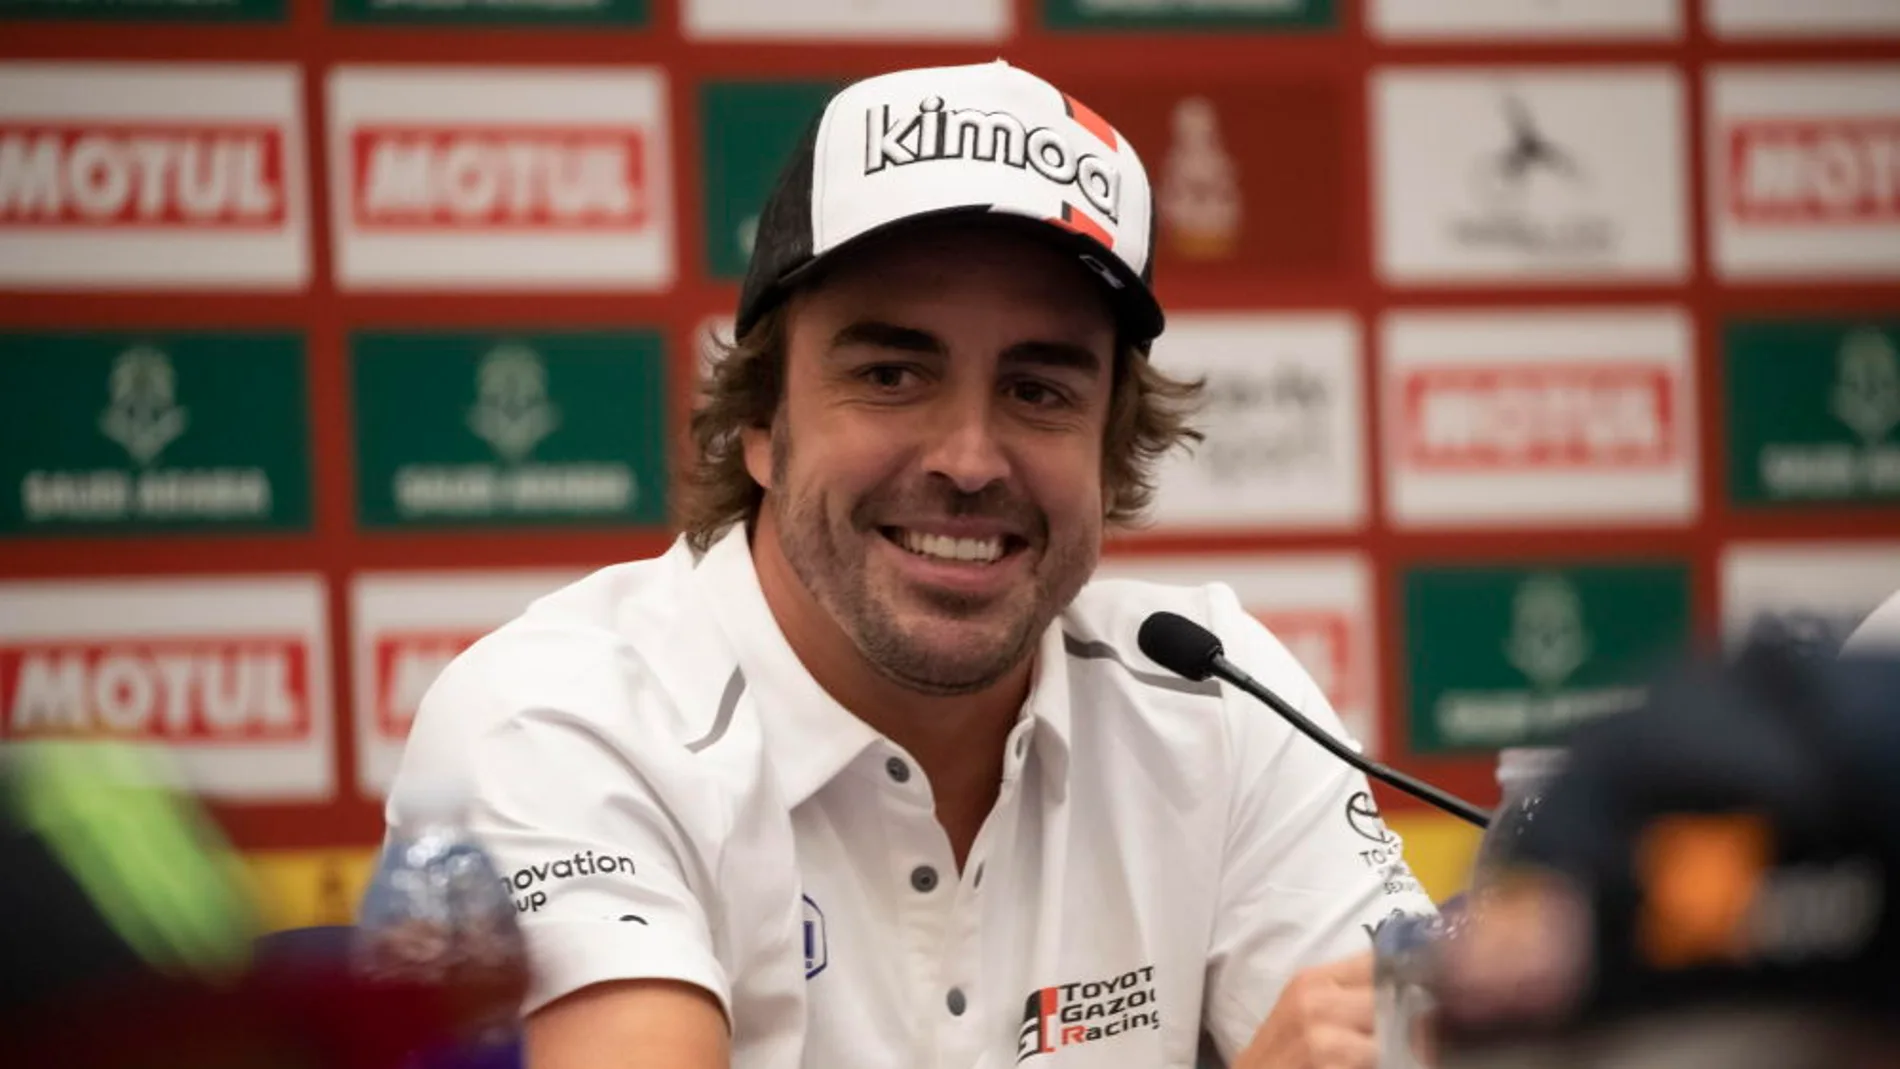 Deportes Antena 3 (04-01-20) Fernando Alonso, a dos días del Dakar: "Me quedo con que tengo unas pelotas muy grandes"